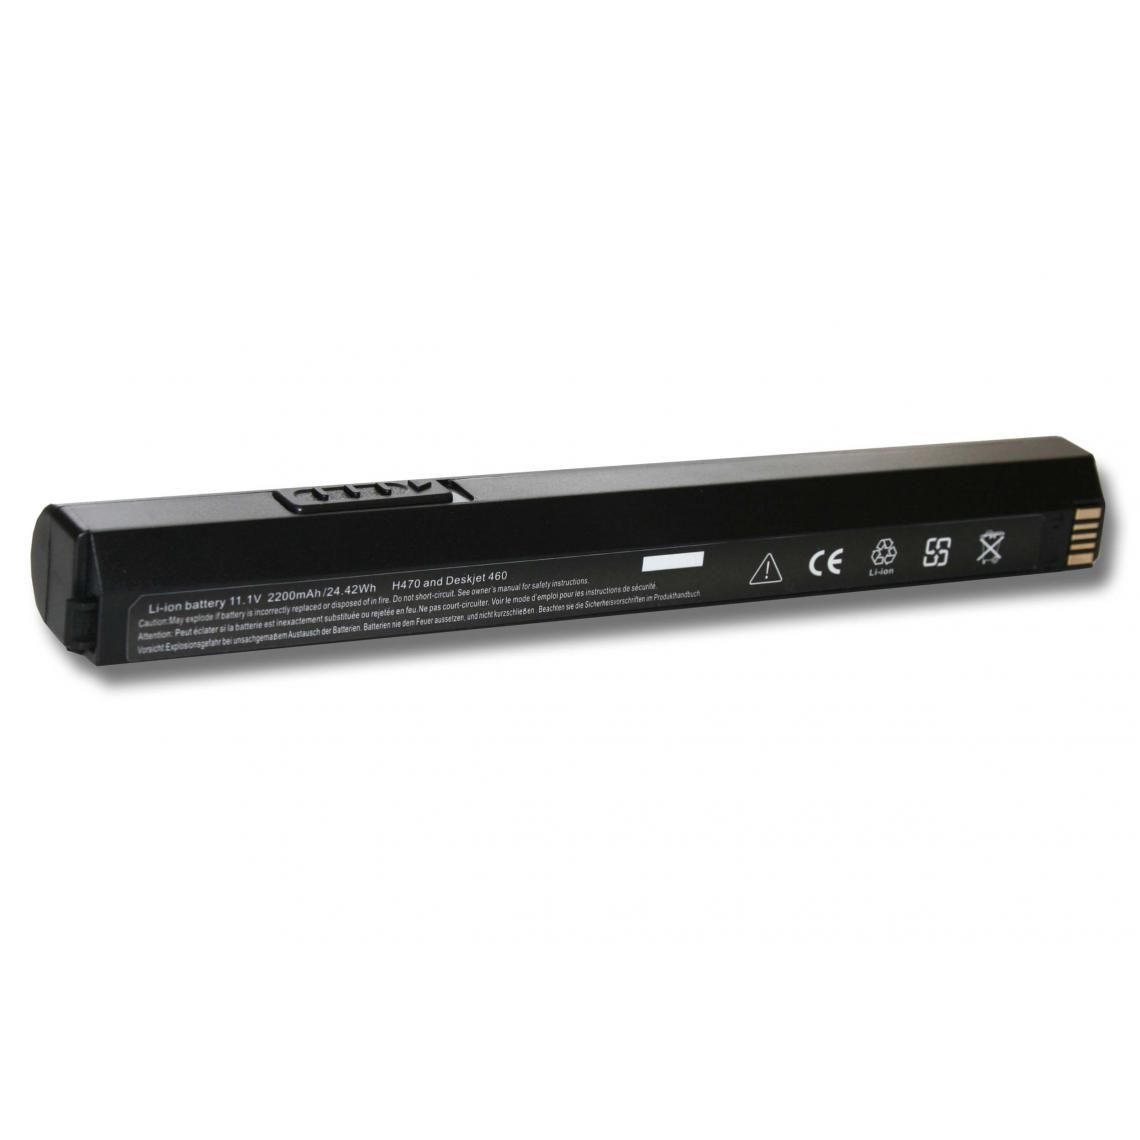 Vhbw - vhbw Batterie compatible avec HP Deskjet 460, 460c, 460cb imprimante, scanner, imprimante d'étiquettes (2200mAh, 11,1V, Li-ion) - Imprimante Jet d'encre